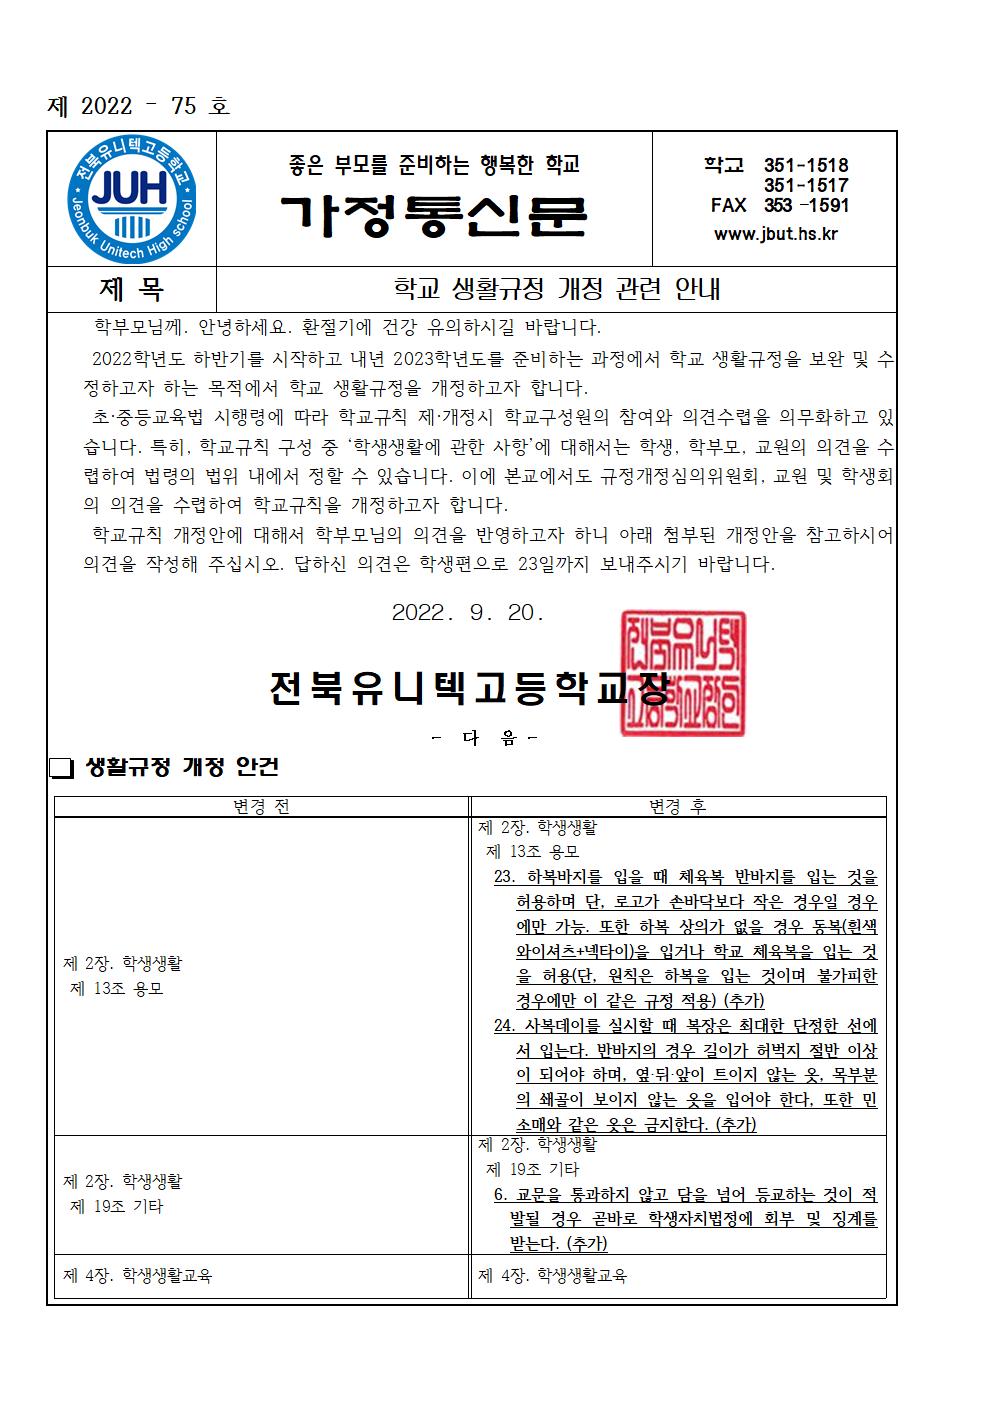 학교생활규정 개정 안내(2022-75)001